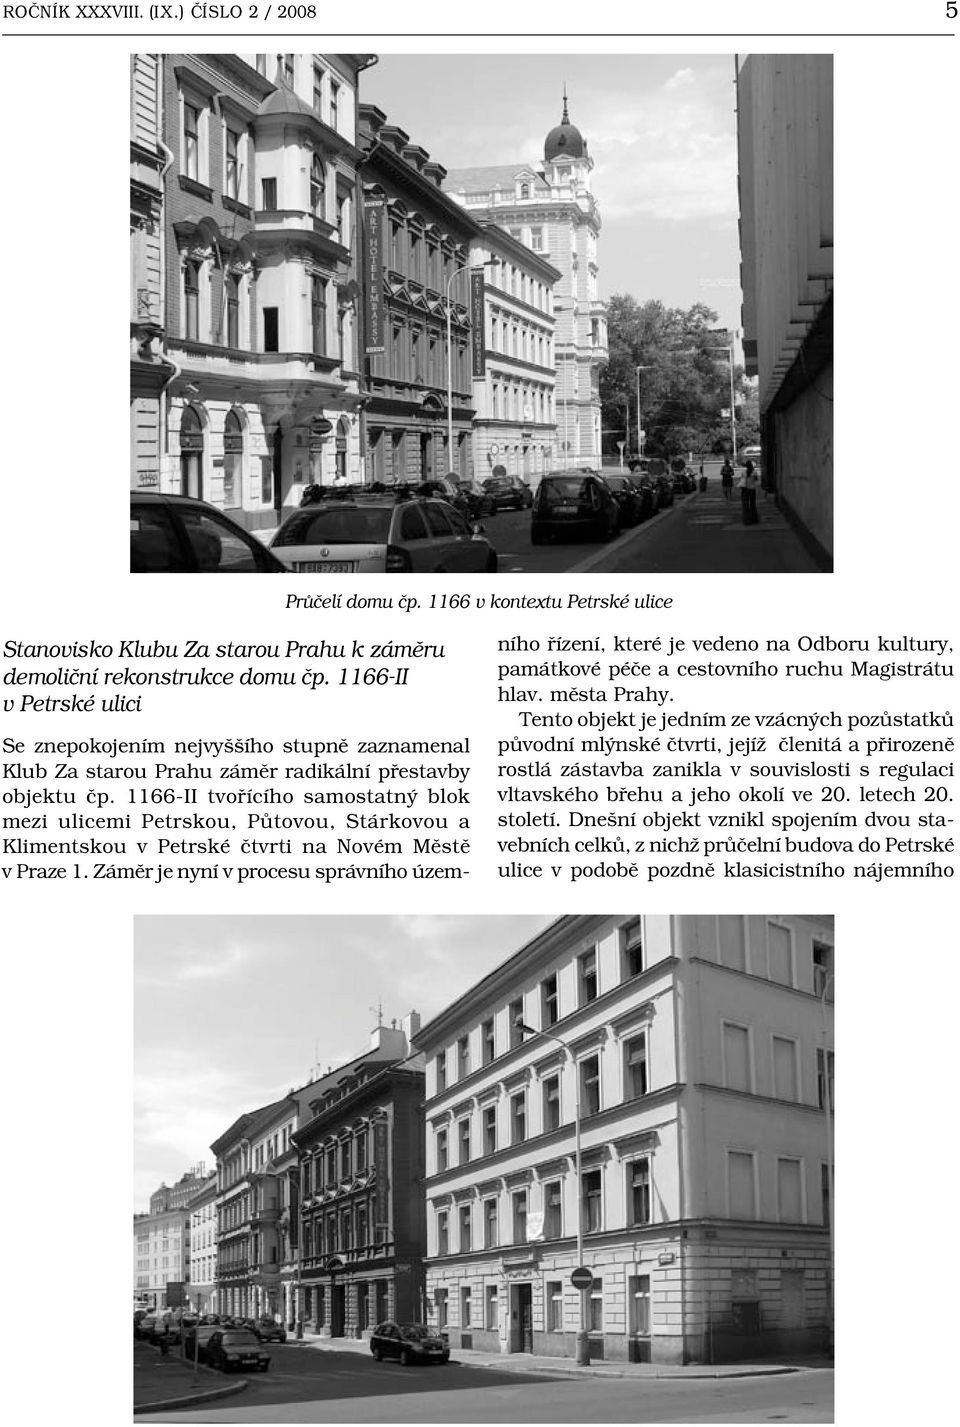 1166-II tvořícího samostatný blok mezi ulicemi Petrskou, Půtovou, Stárkovou a Klimentskou v Petrské čtvrti na Novém Městě v Praze 1.